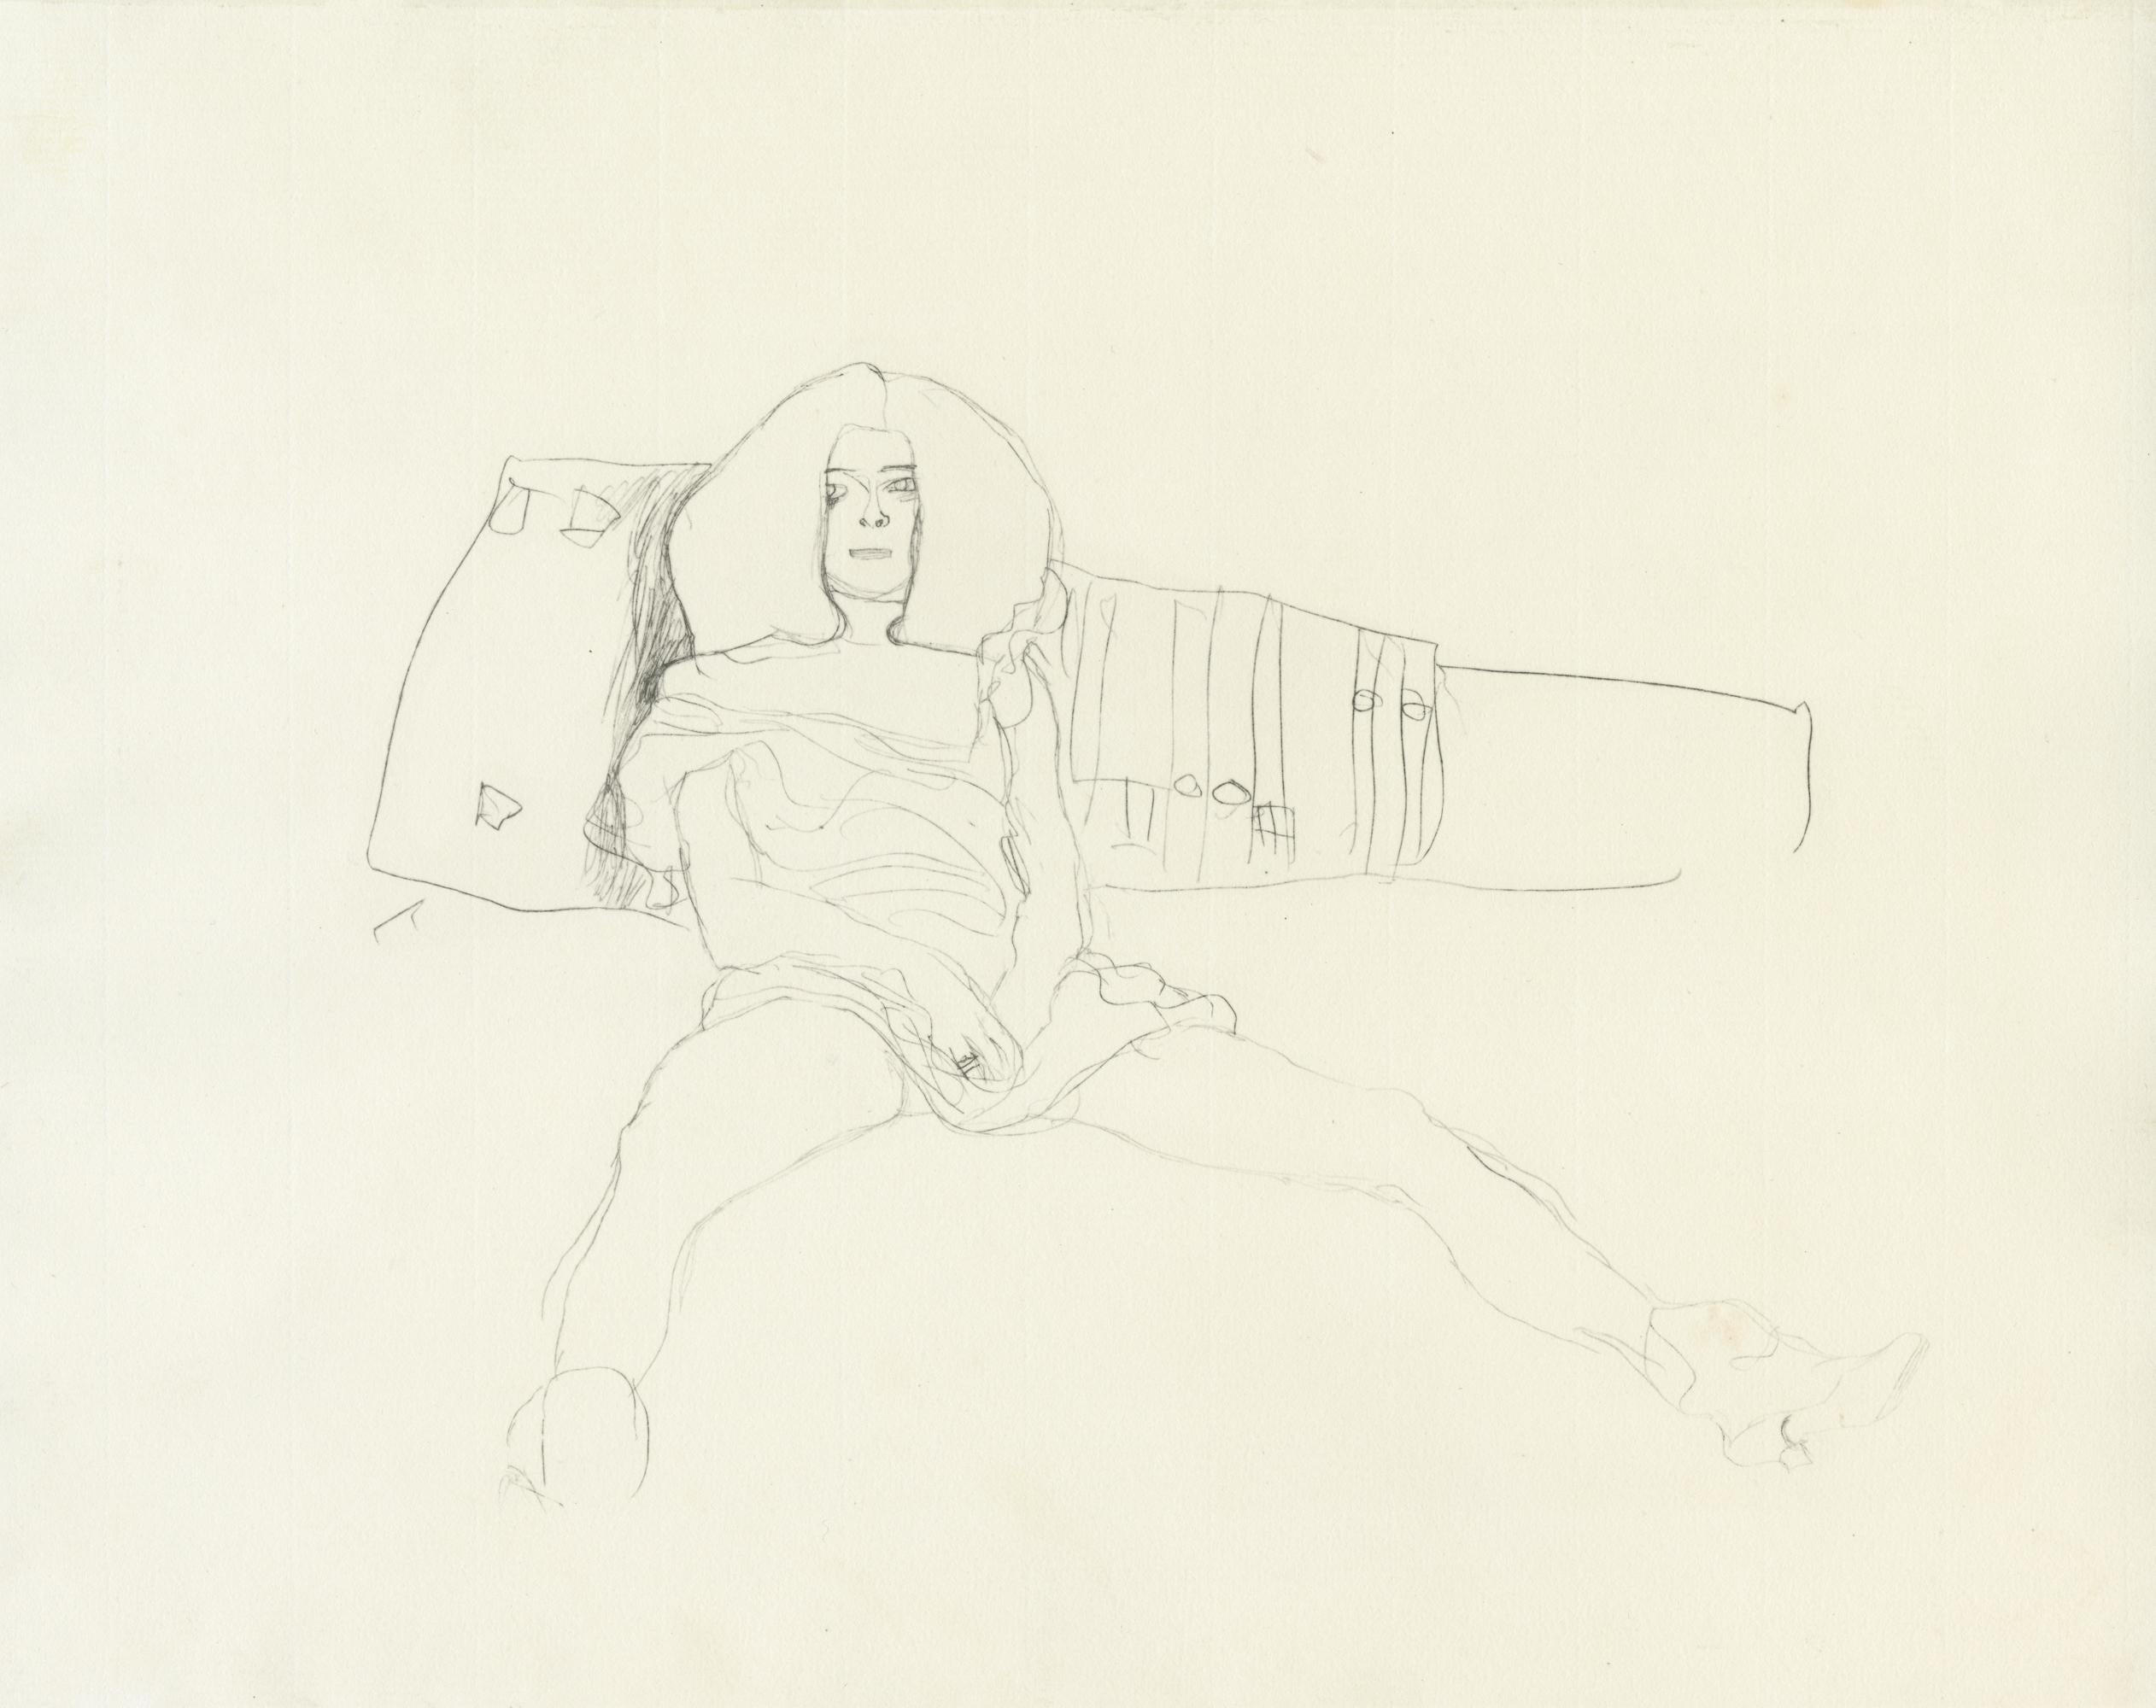 Planche n°2 du portfolio "Dialogues des courtisanes" de Gustav Klimt de 1907, composé de 15 collotypes sur papier japon crème. Les dessins de ce folio seraient des études pour les célèbres tableaux de Klimt, les Serpents d'eau. 

Cette estampe